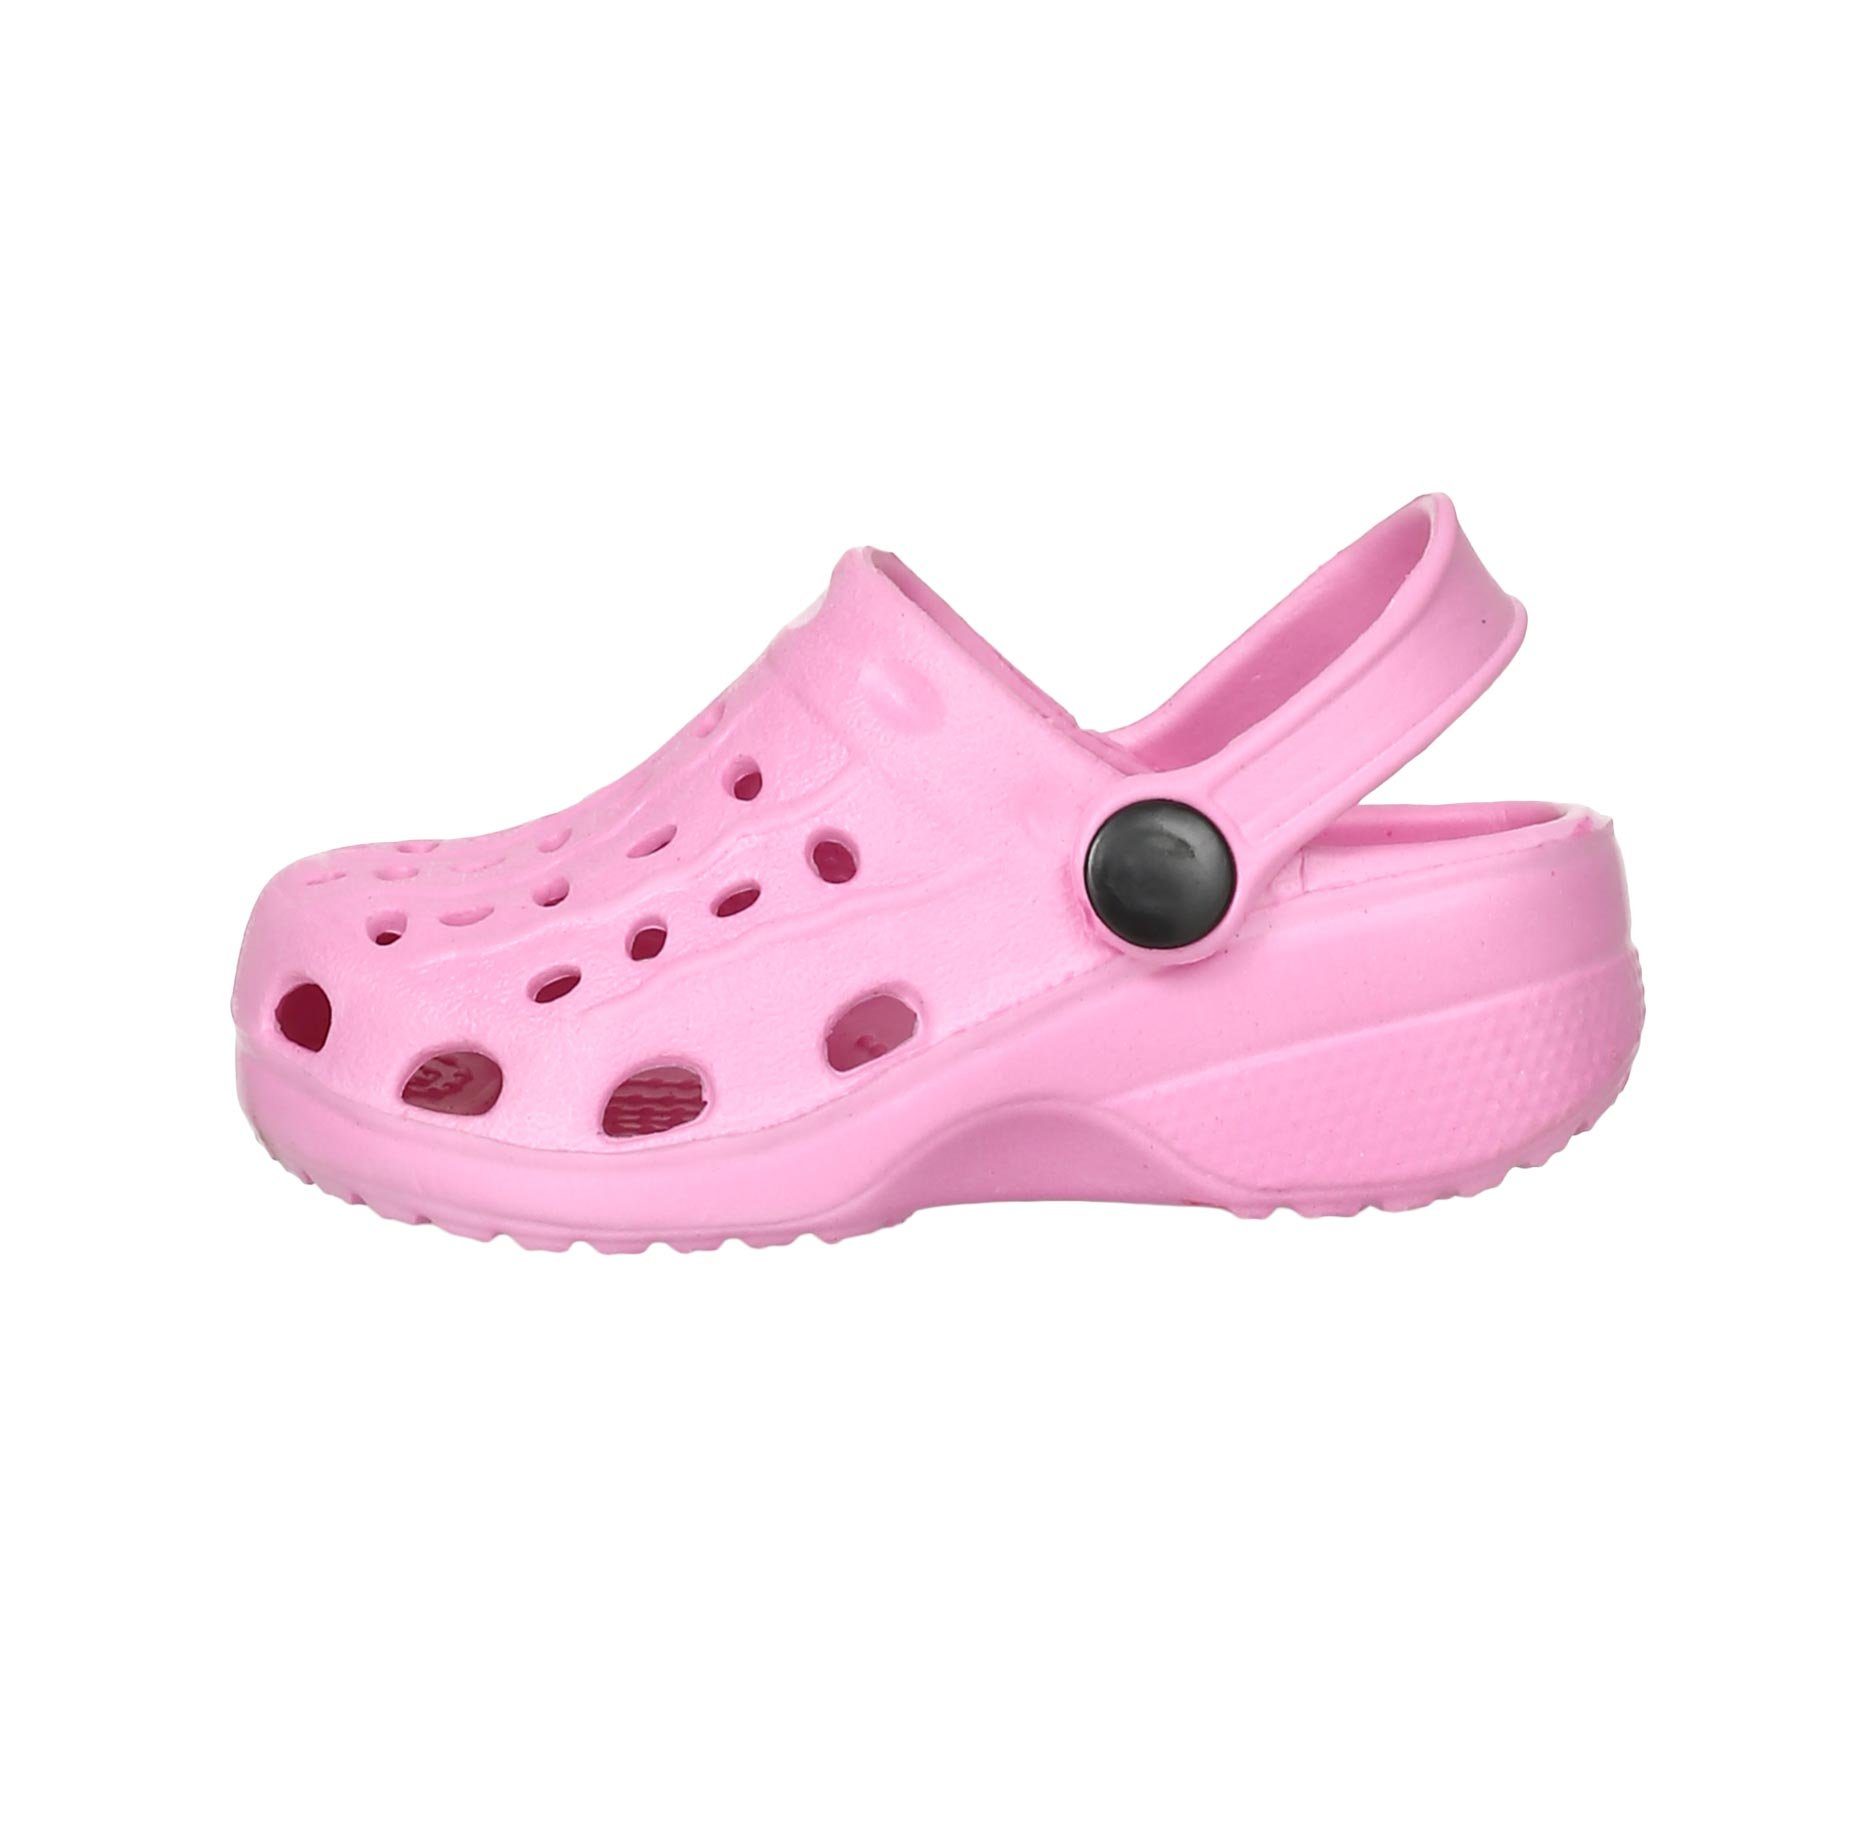 Playshoes EVA-Clog Basic Clog